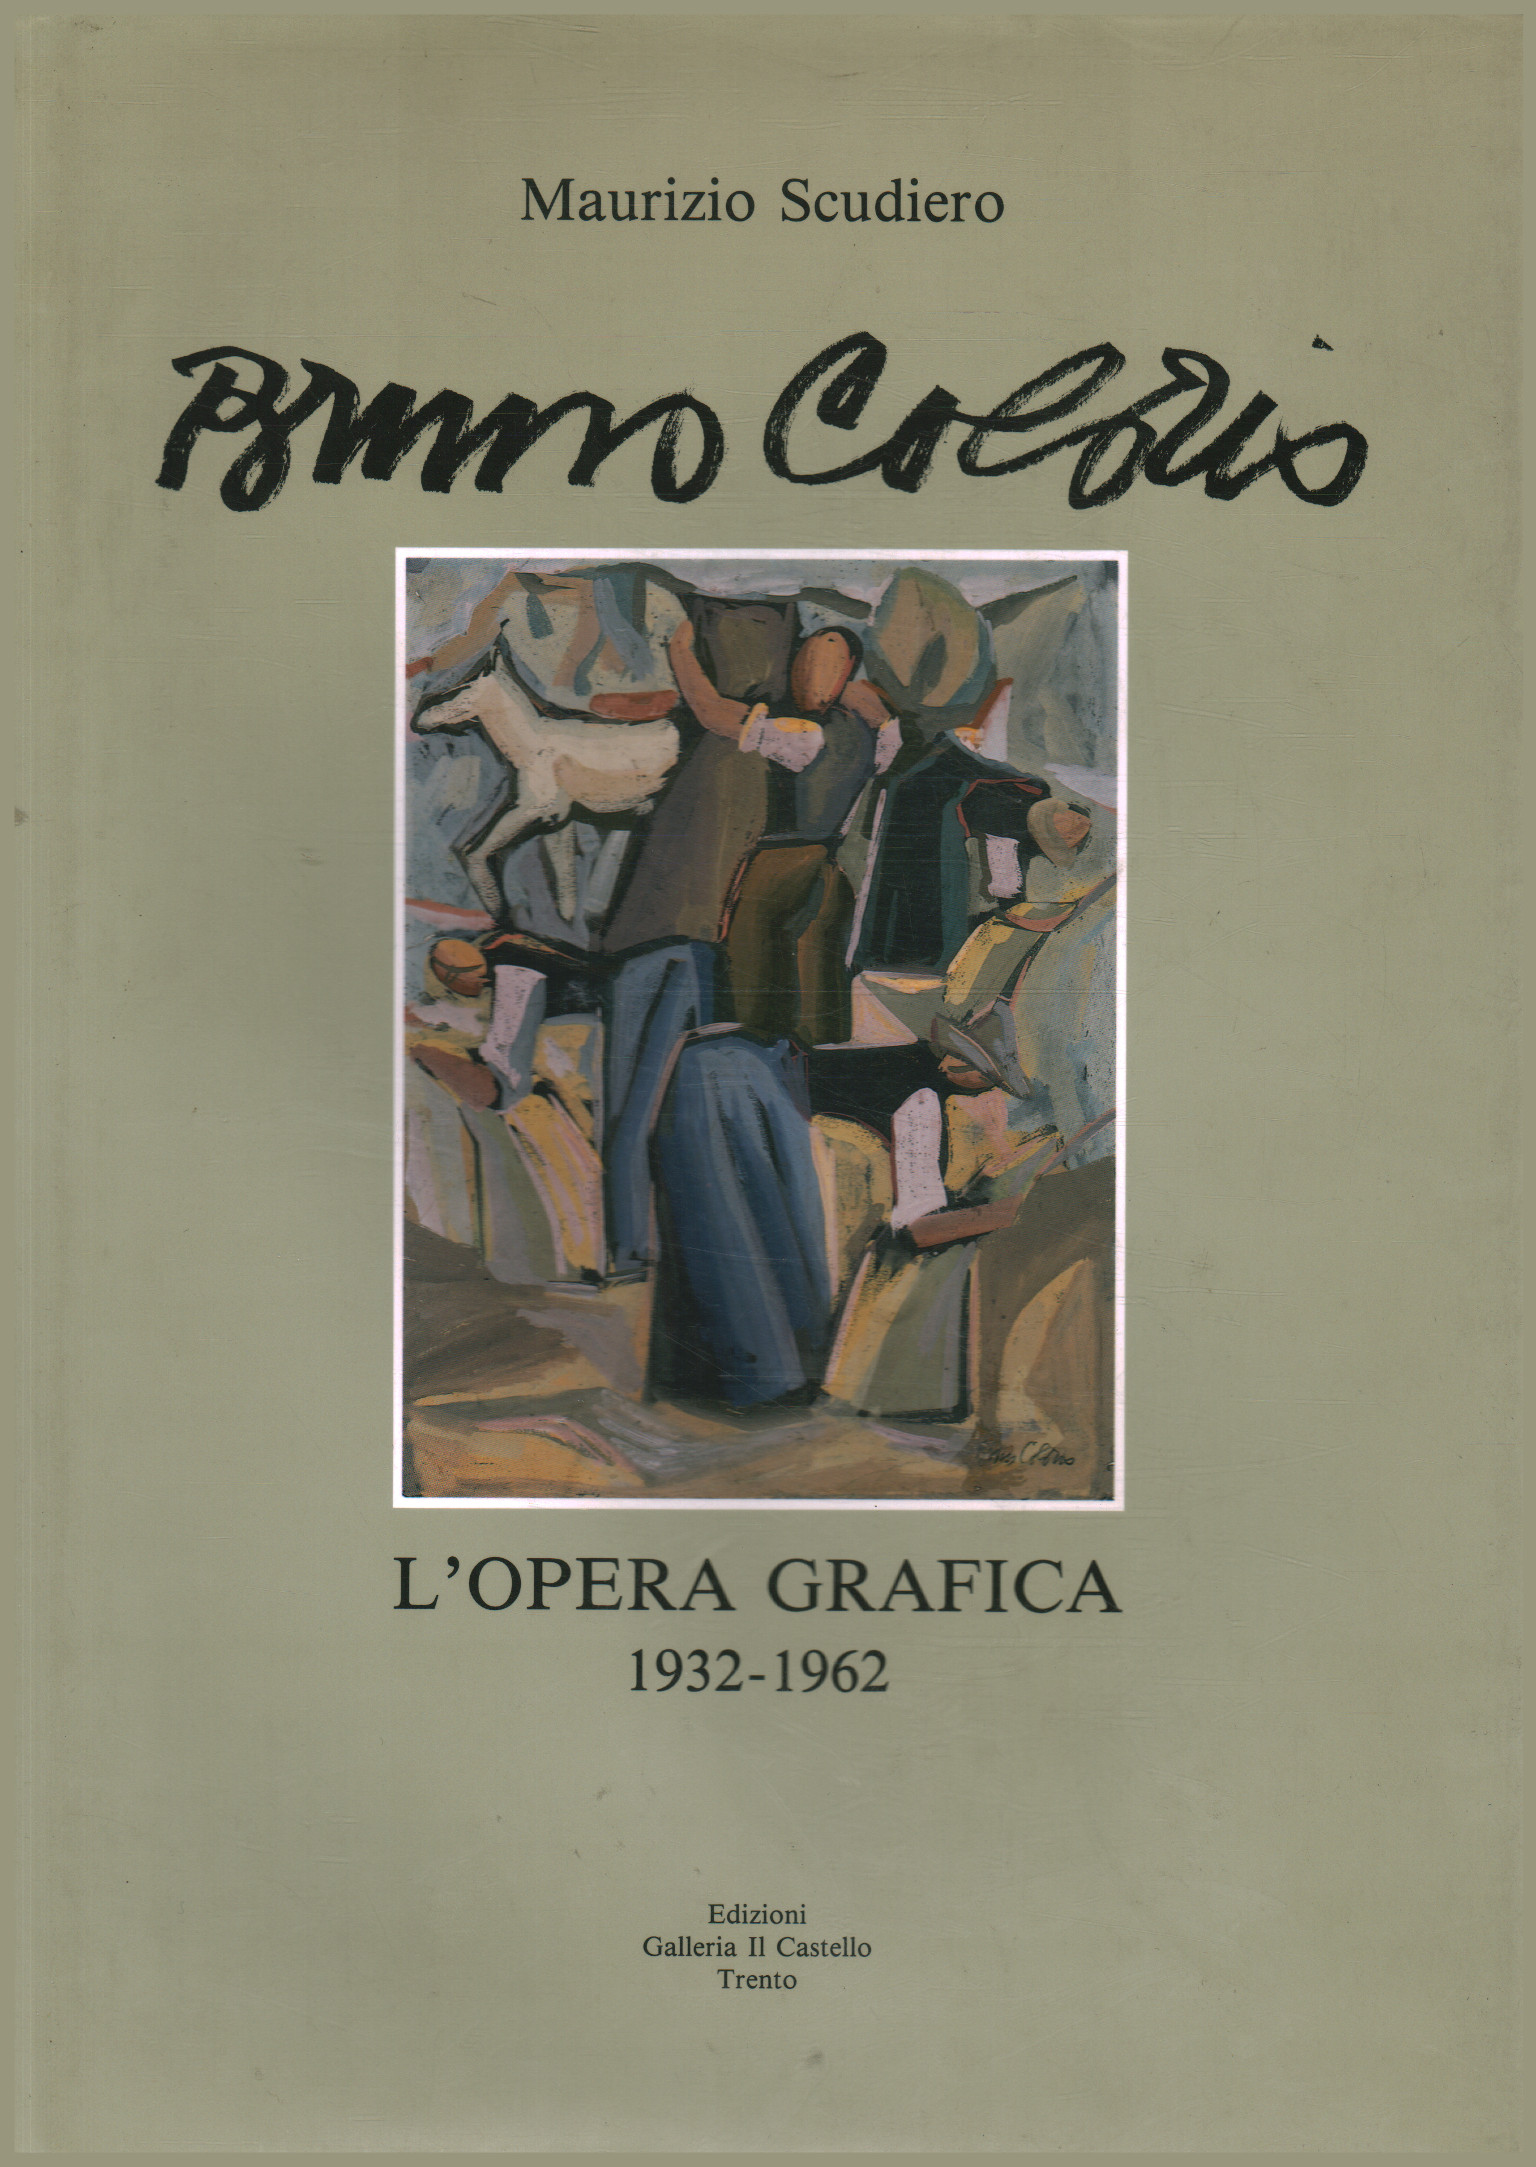 Bruno Colorio. La obra gráfica 1932-1962, Maurizio Scudiero